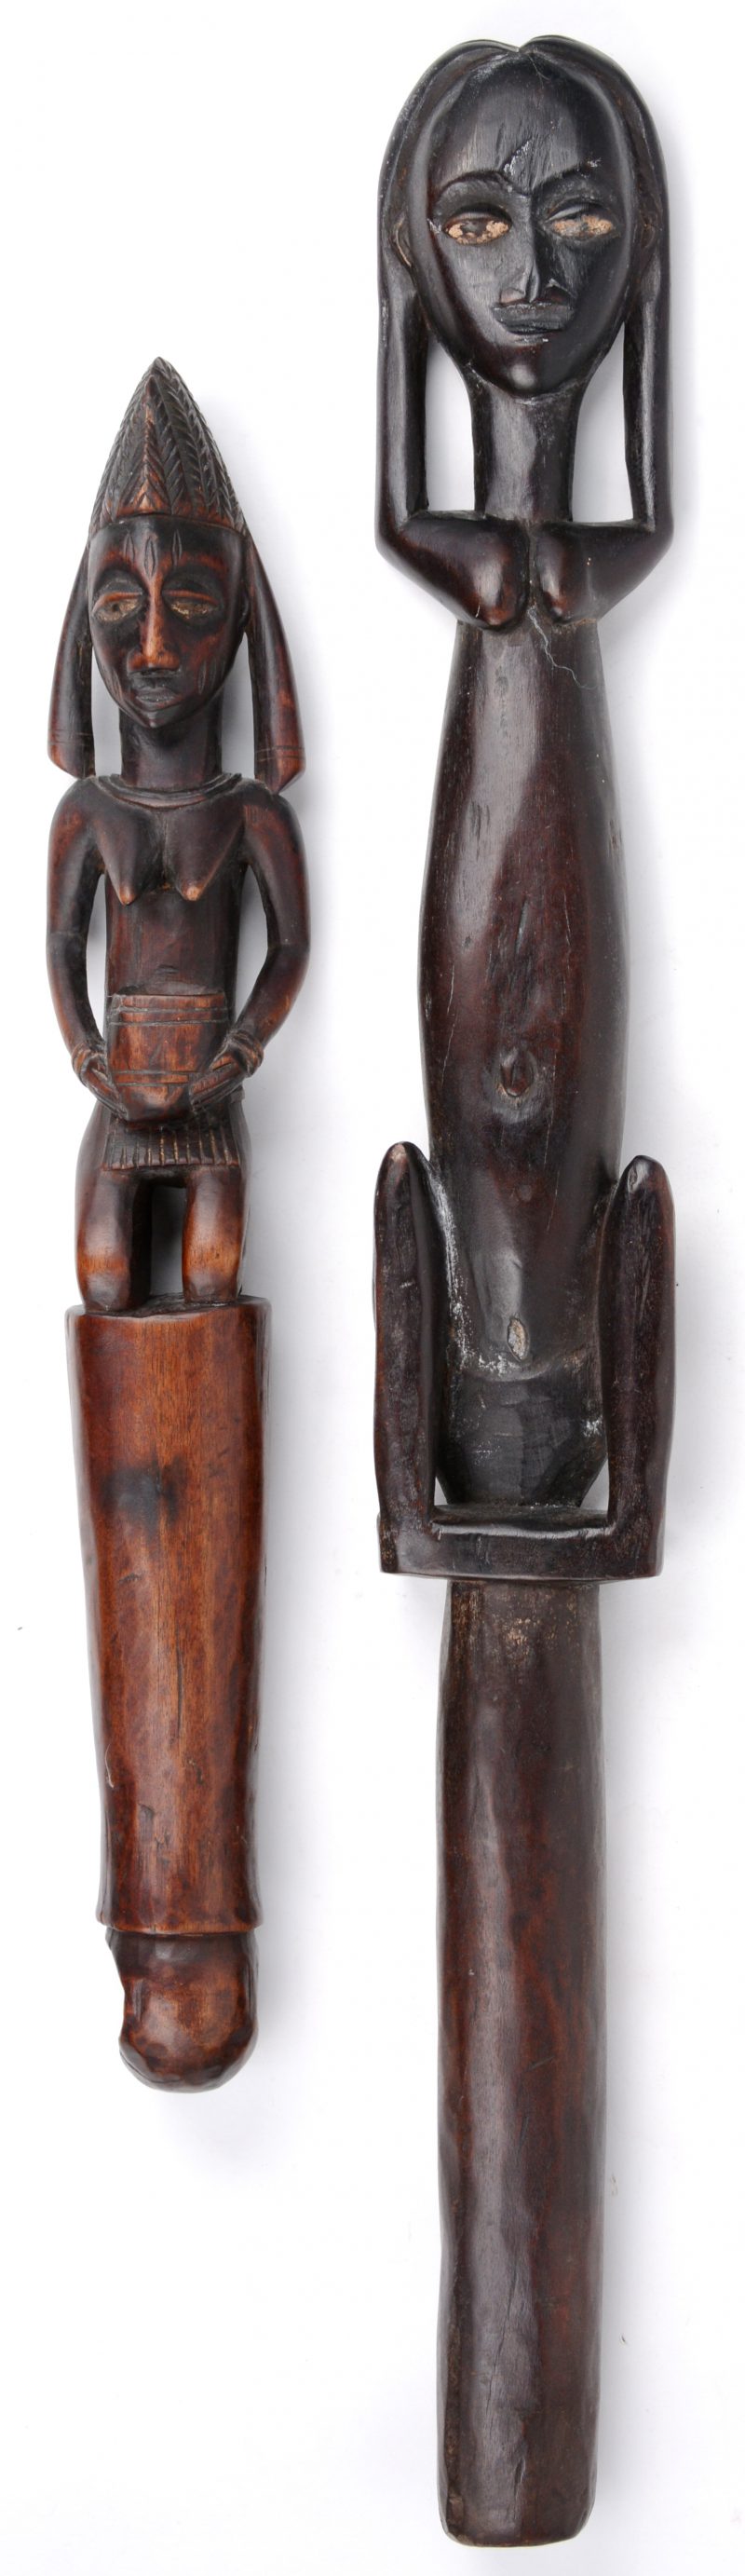 Twee verschillende Afrikaanse scepters van gebeeldhouwd hout.